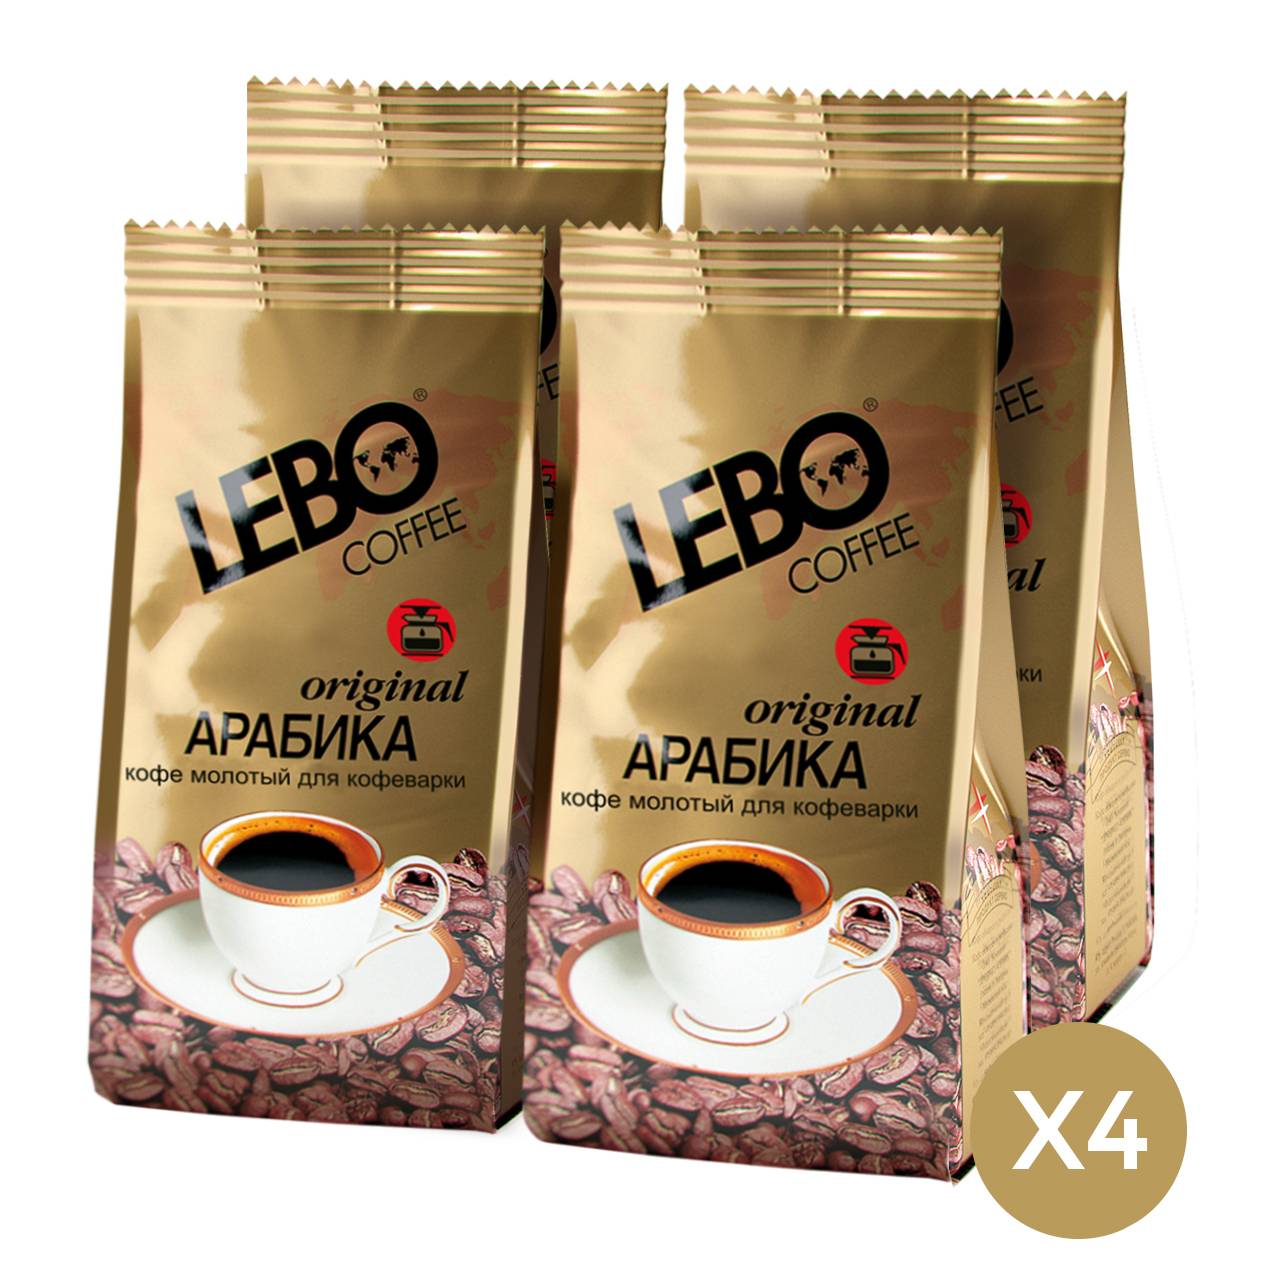 Кофе принц lebo арабика молотой для турки в мягкой упаковке